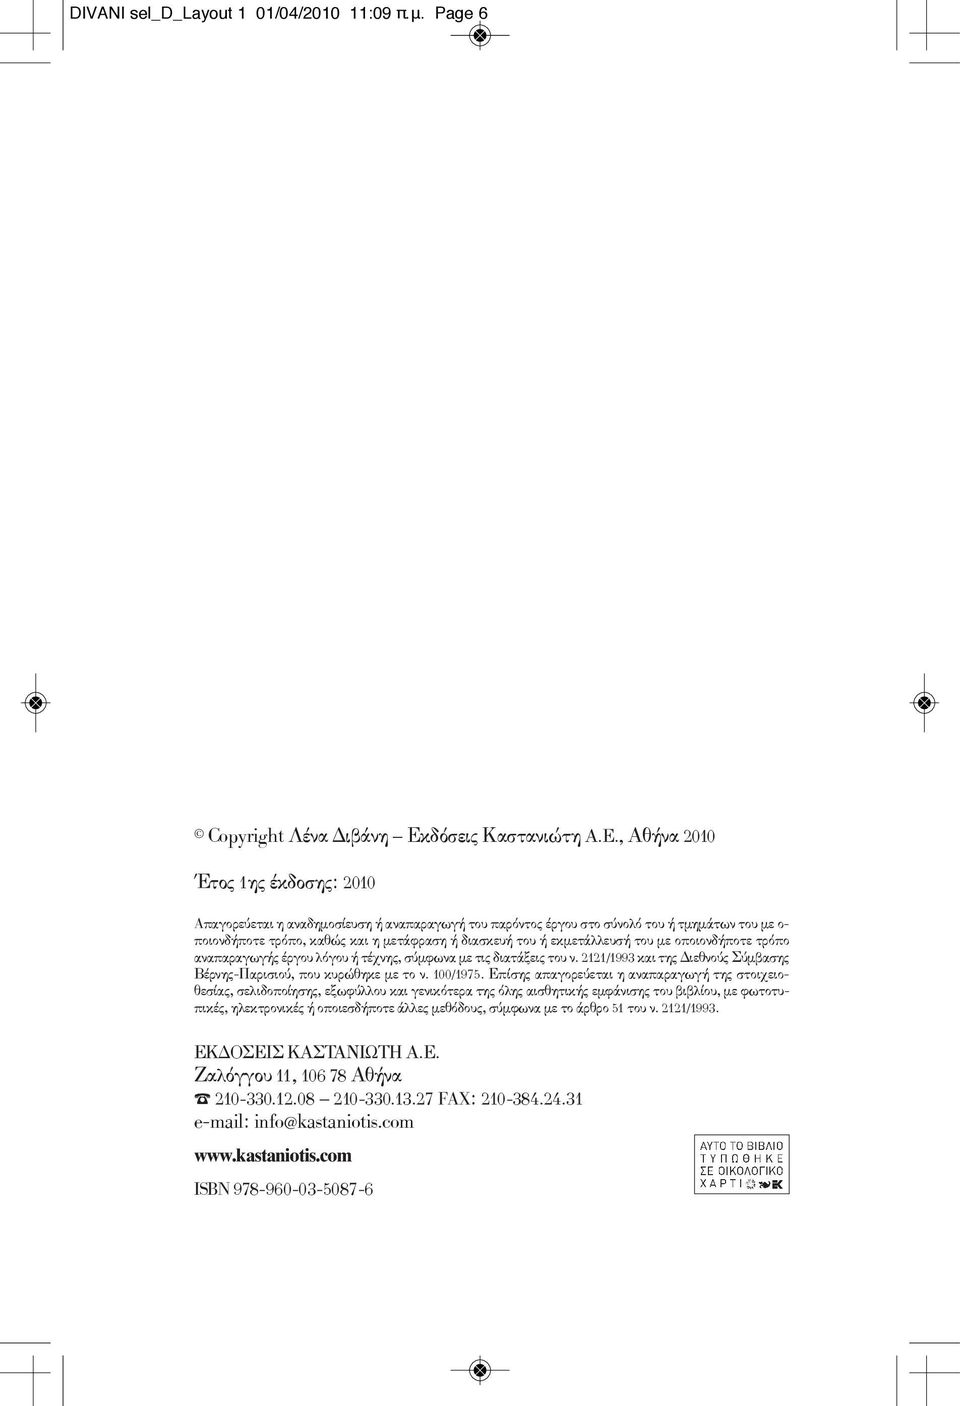 , Αθήνα 2010 Έτος 1ης έκδοσης: 2010 Aπαγορεύεται η αναδημοσίευση ή αναπαραγωγή του παρόντος έργου στο σύνολό του ή τμημάτων του με ο- ποιονδήποτε τρόπο, καθώς και η μετάφραση ή διασκευή του ή